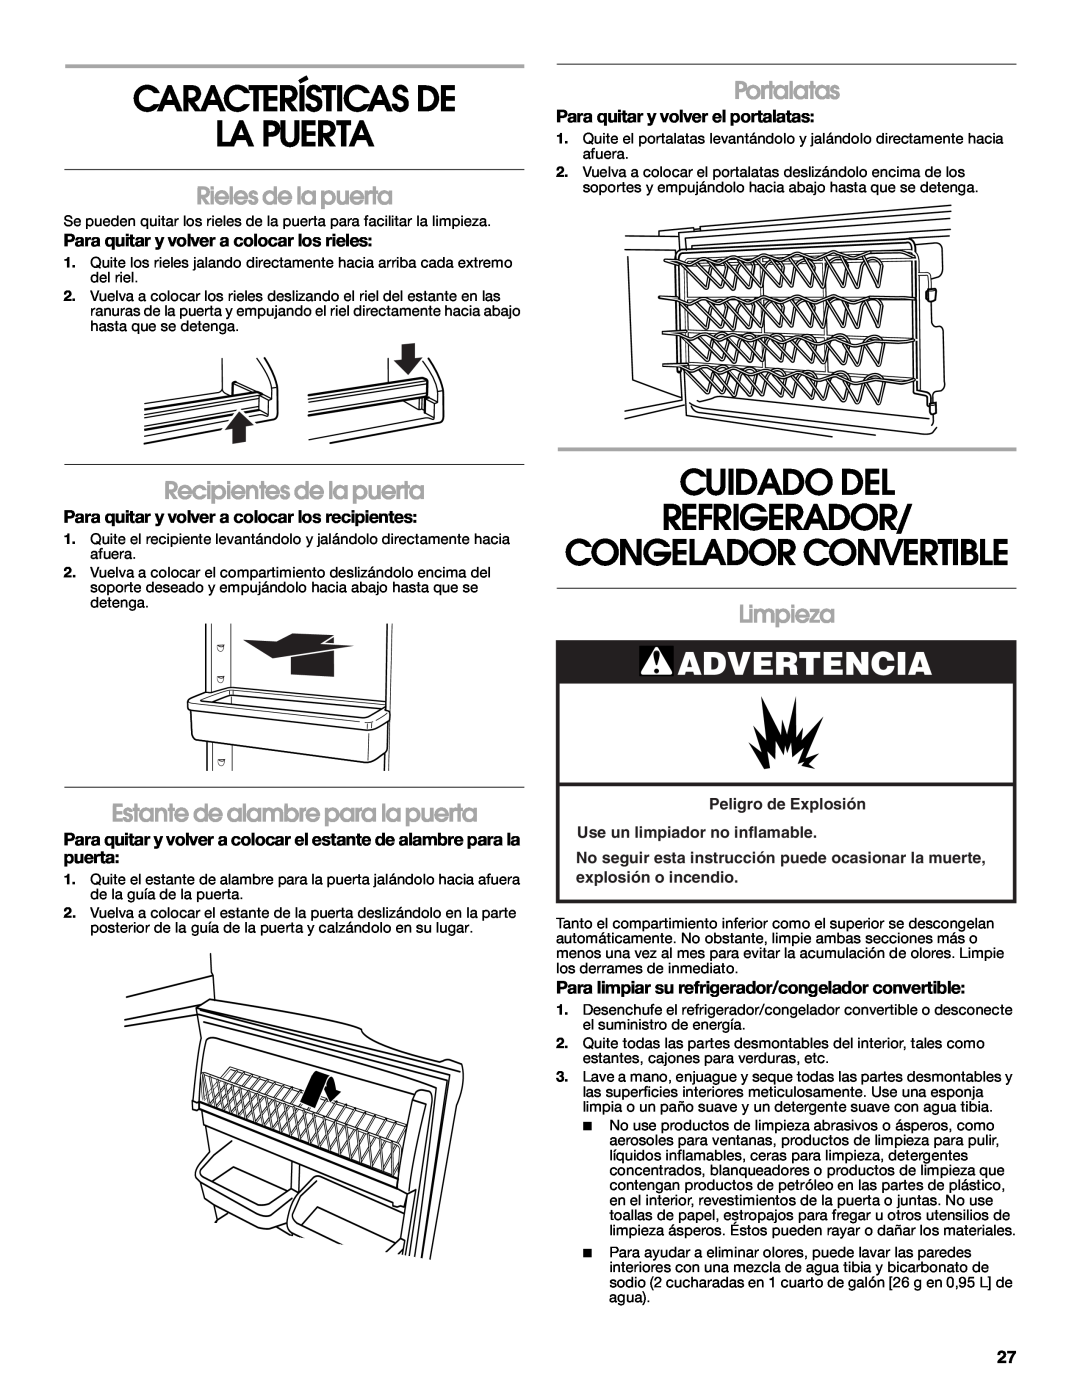 Whirlpool 2314466 Características De La Puerta, Cuidado Del Refrigerador, Congelador Convertible, Rieles de la puerta 